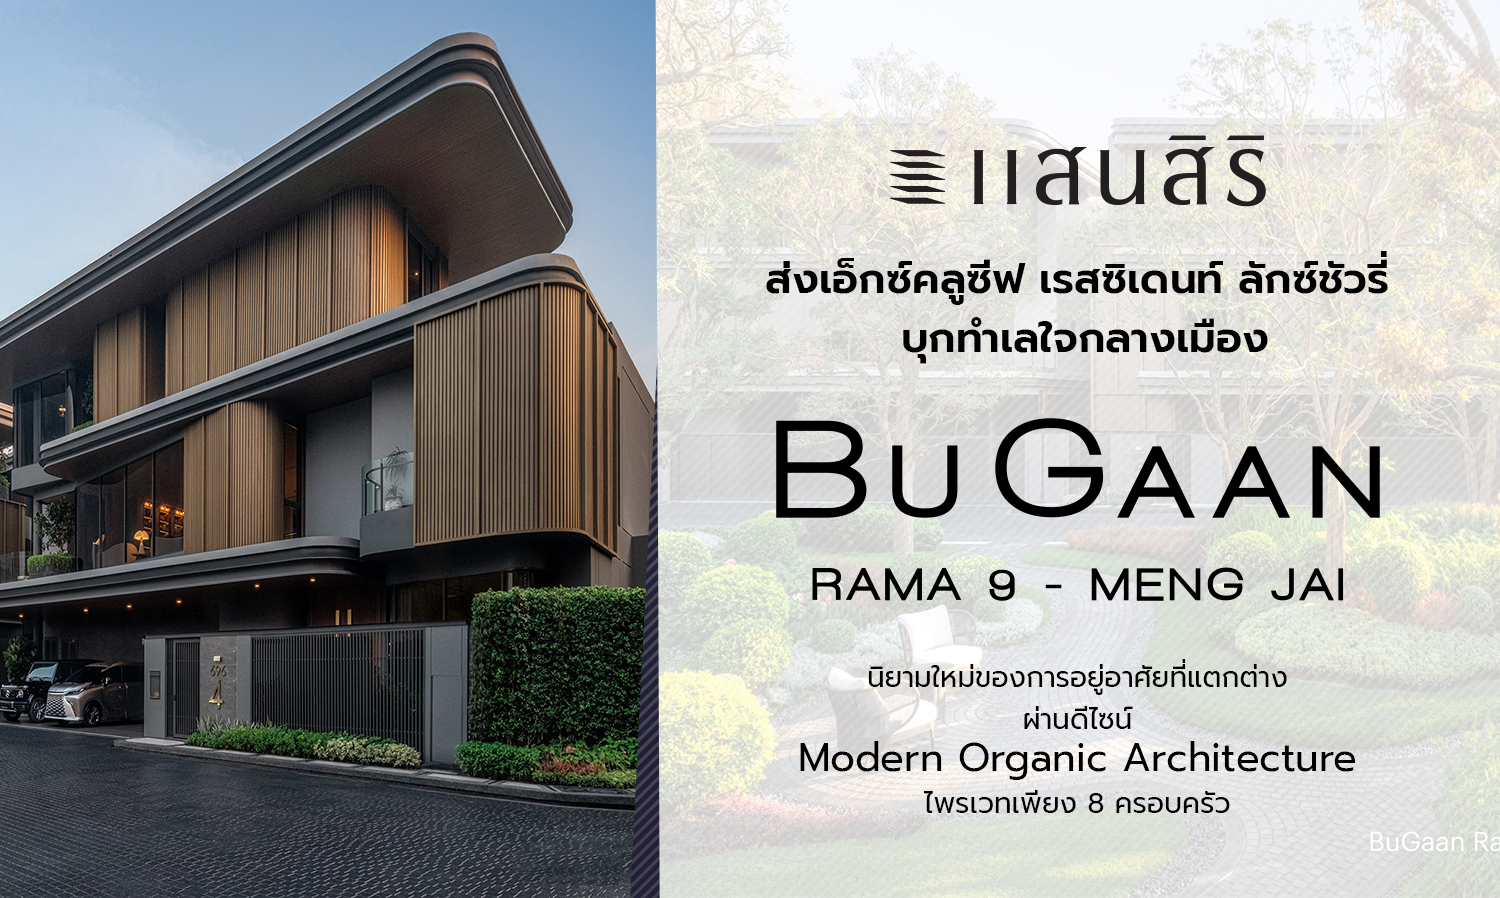 แสนสิริ ส่งเอ็กซ์คลูซีฟ เรสซิเดนท์ ลักซ์ชัวรี่ บุกทำเลใจกลางเมือง BuGaan Rama9-Meng Jai นิยามใหม่ของการอยู่อาศัยที่แตกต่าง ผ่านดีไซน์ Modern Organic Architecture ไพรเวทเพียง 8 ครอบครัว